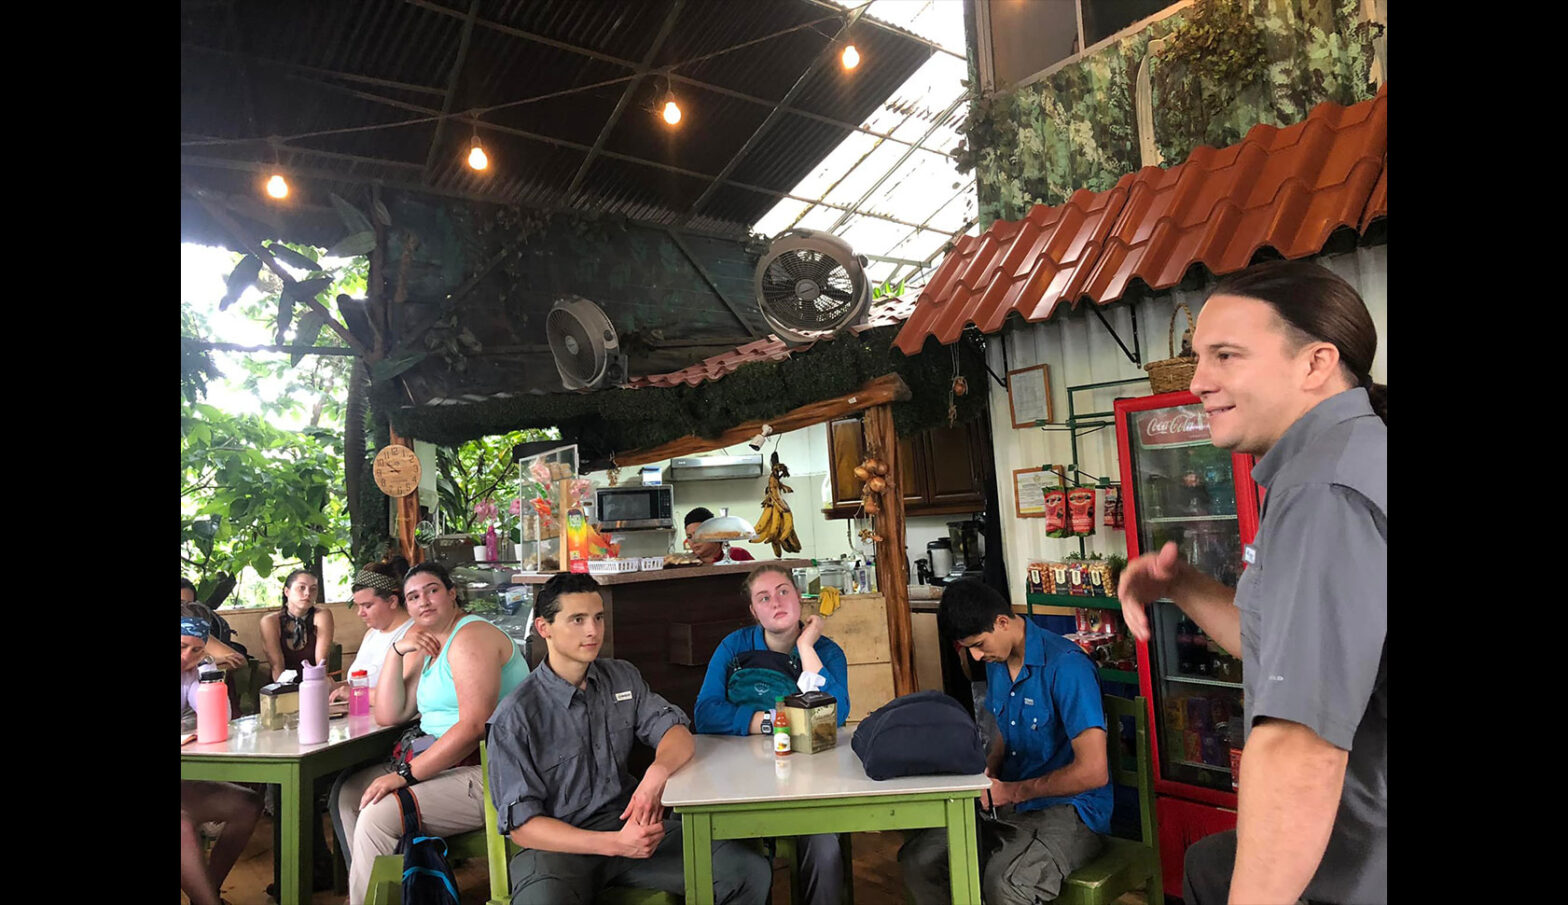 El viaje a Costa Rica es una inmersión de verano en OneHealth